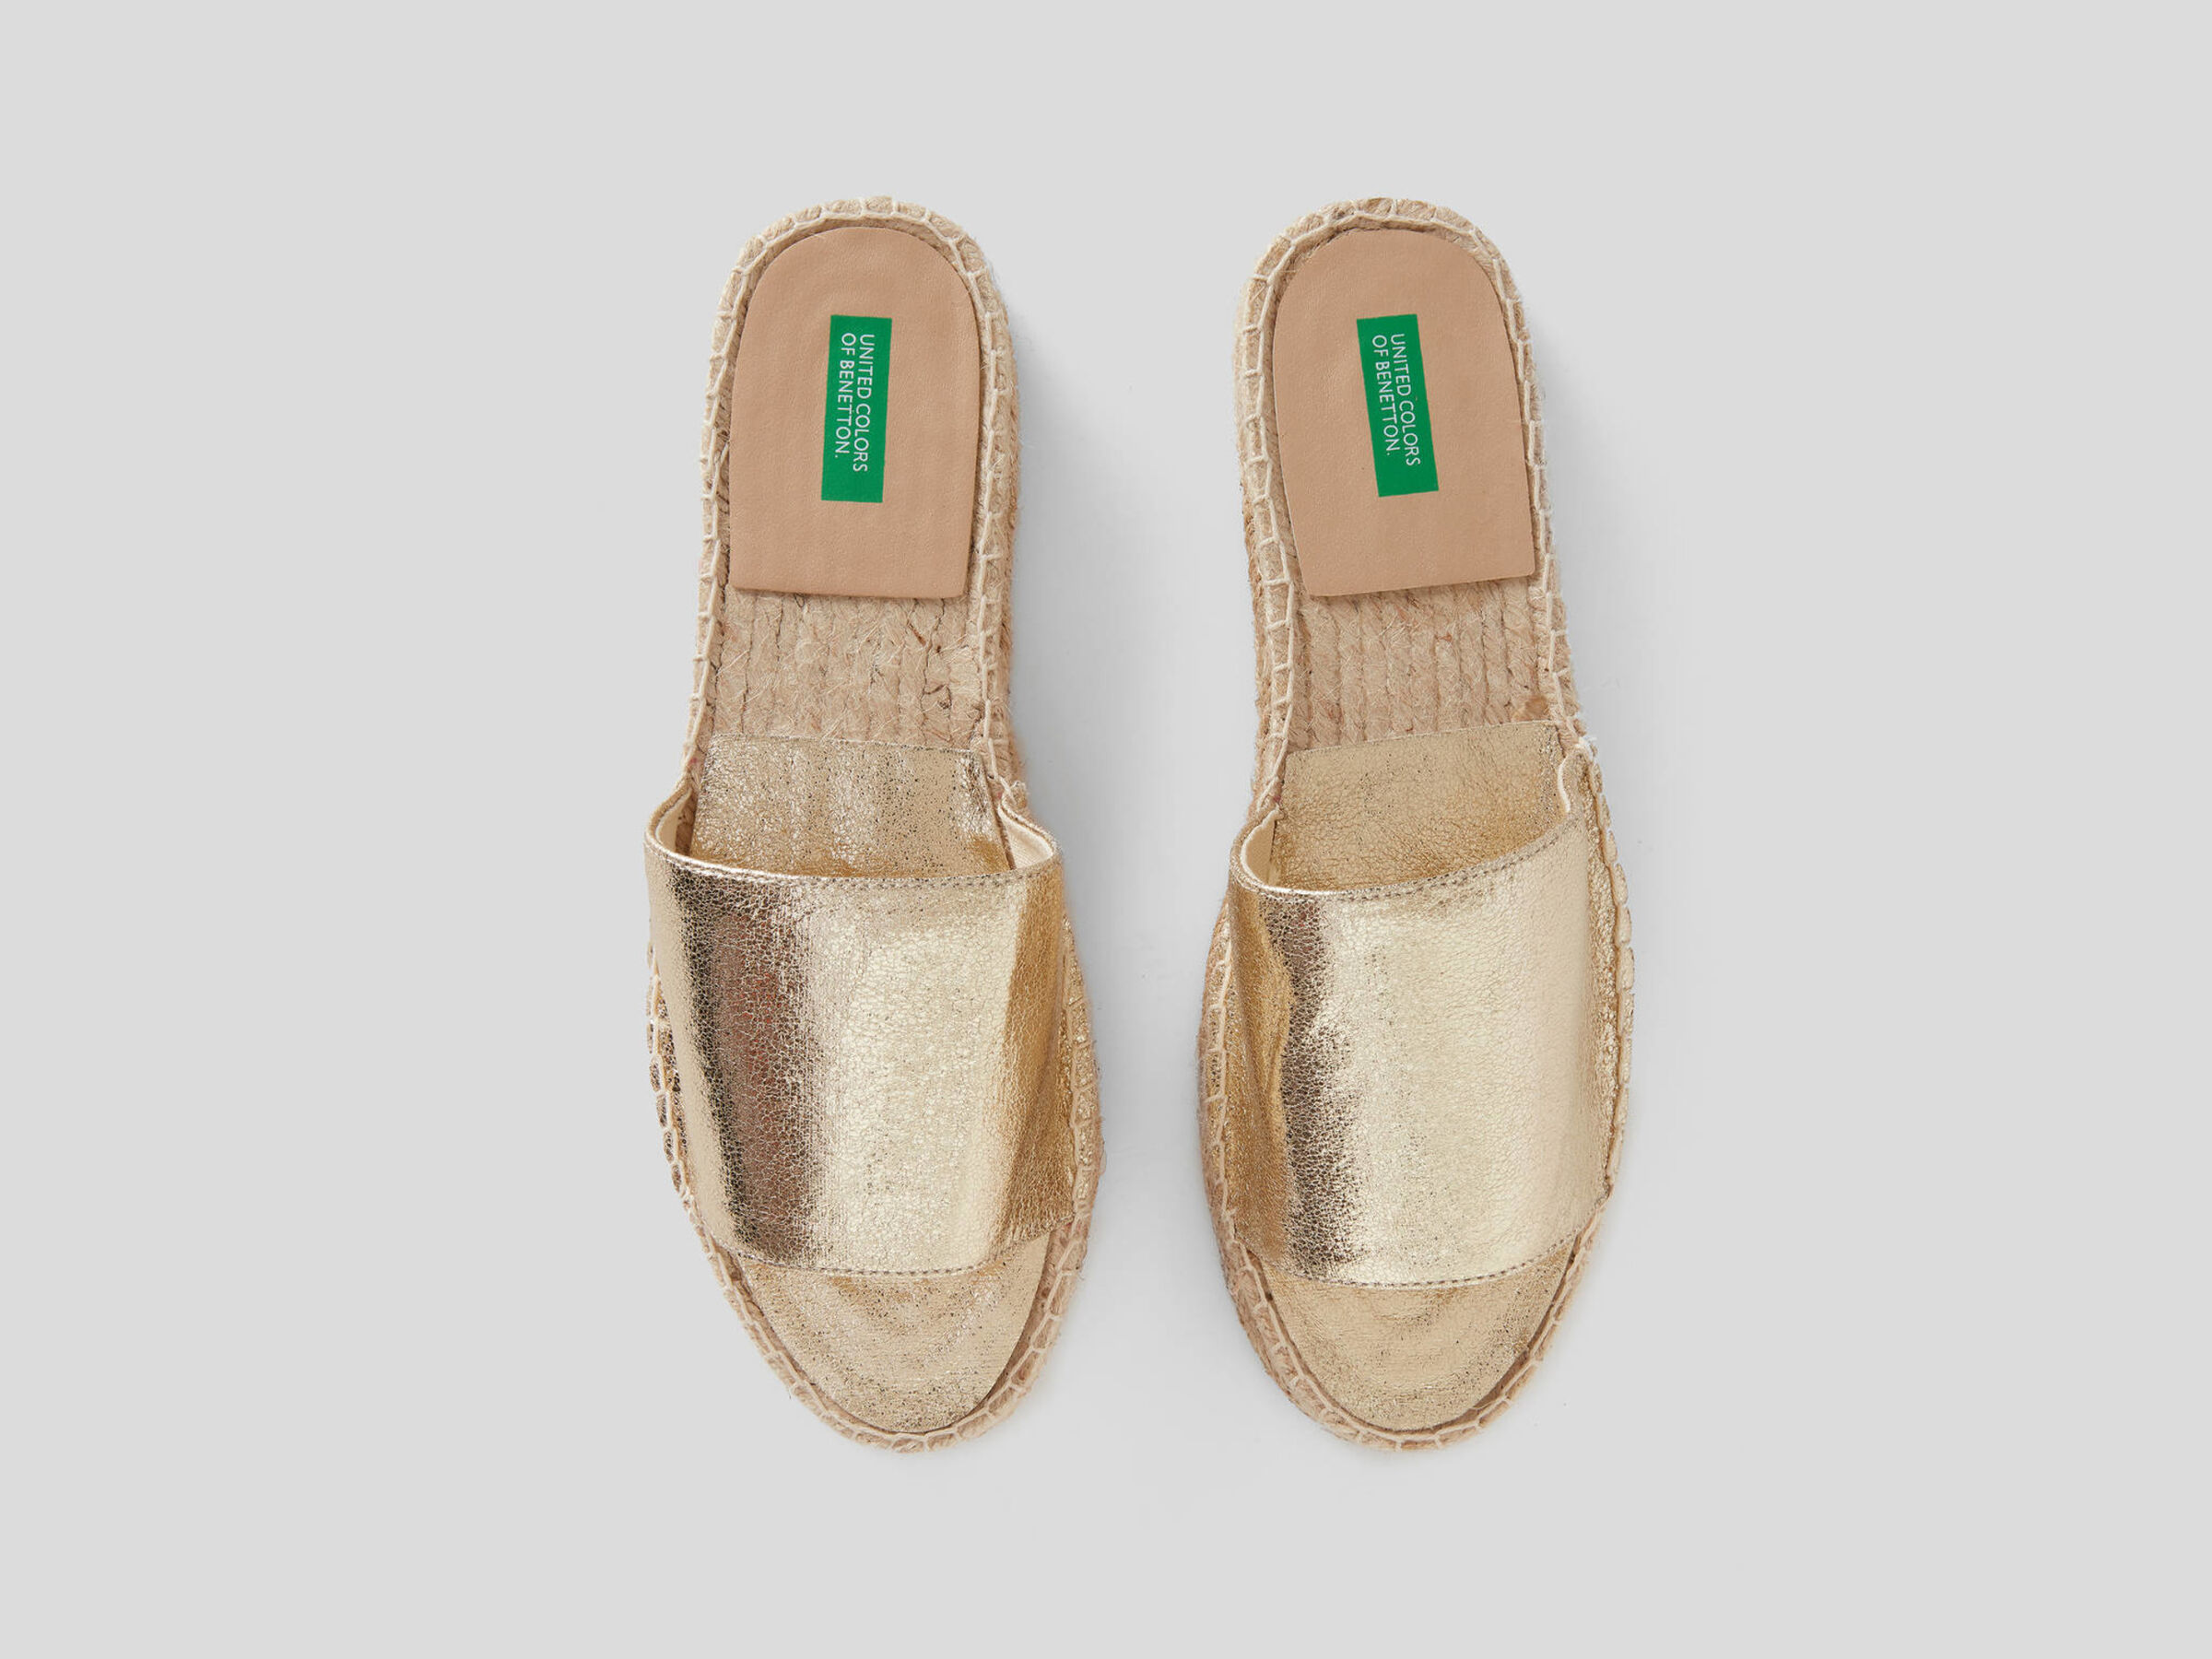 Golden slippers